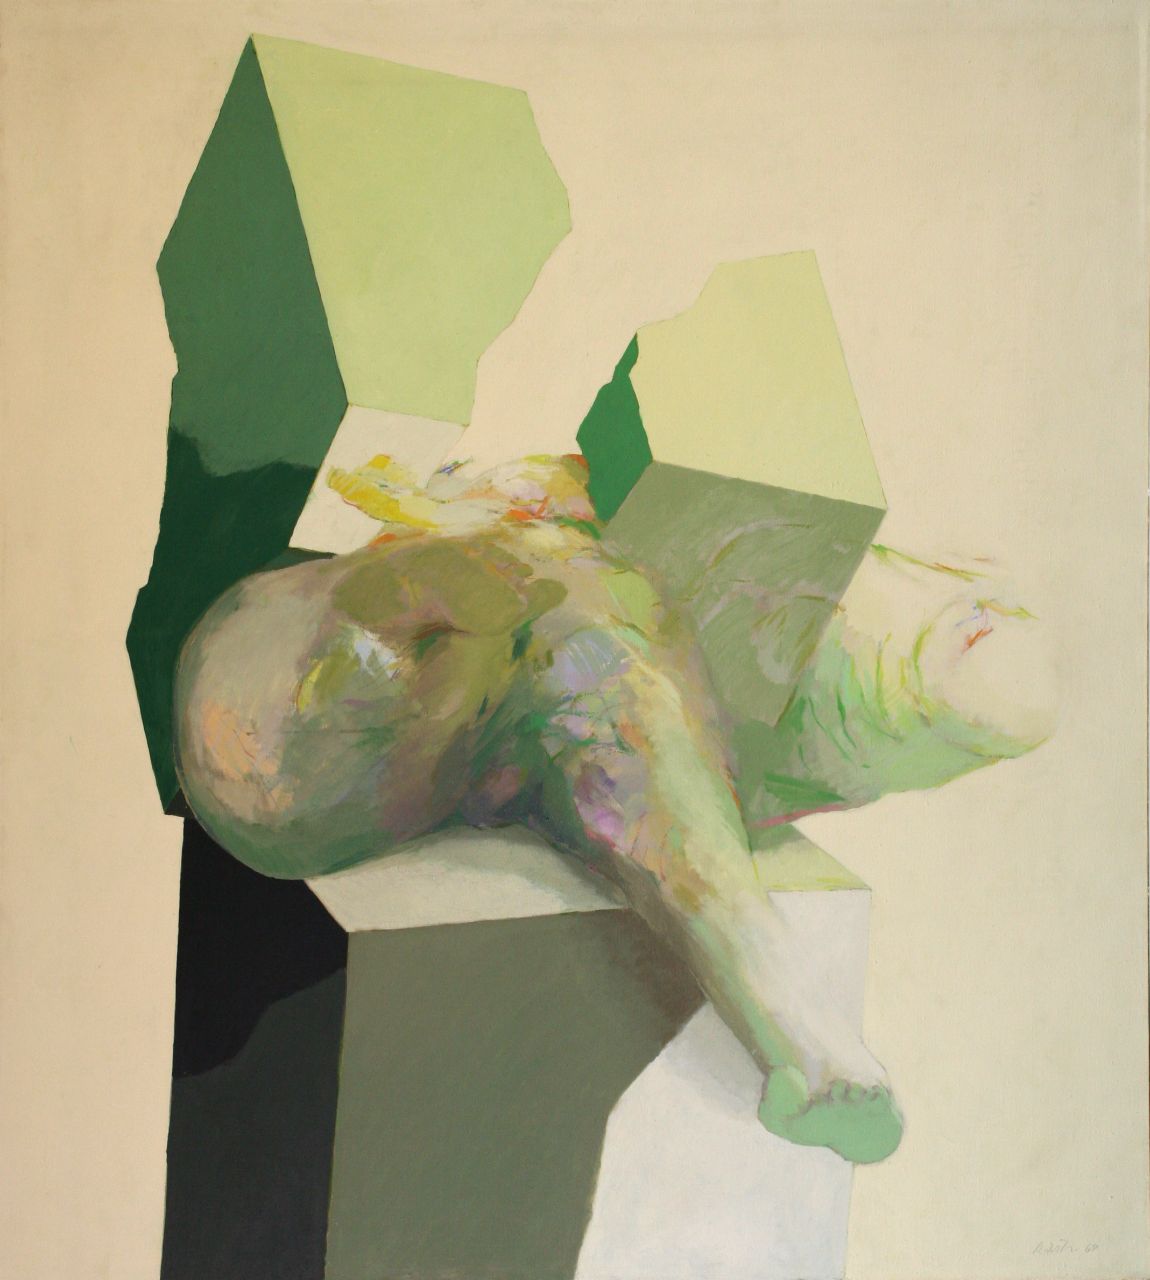 Roland Dörfler, Würfel durchbrochen II, 1969, Öl auf Leinwand, 140 cm x 125 cm, dör015kü